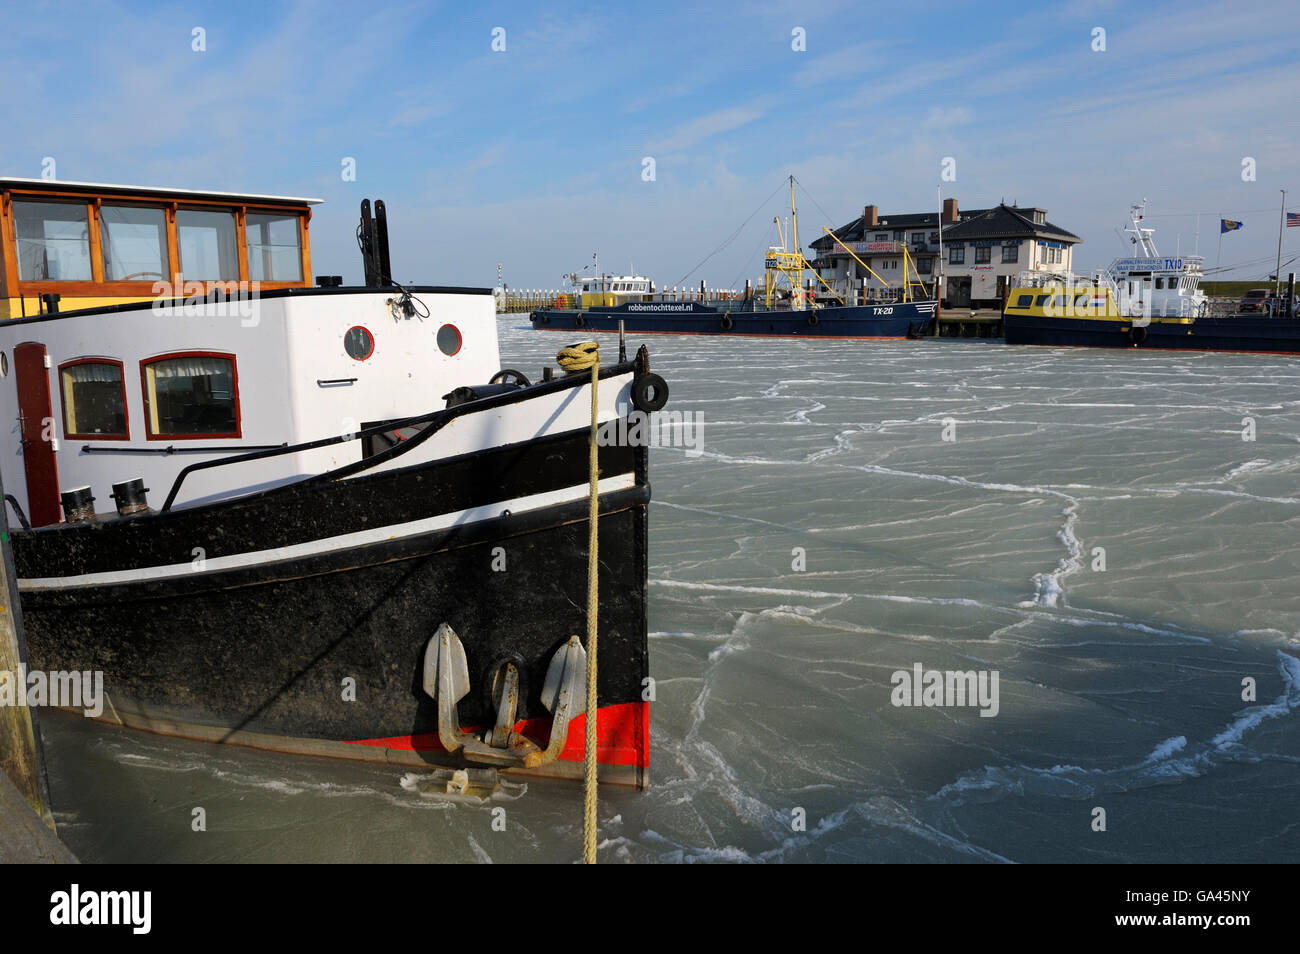 Harbour of Oudeschild in winter, Texel, Netherlands Stock Photo